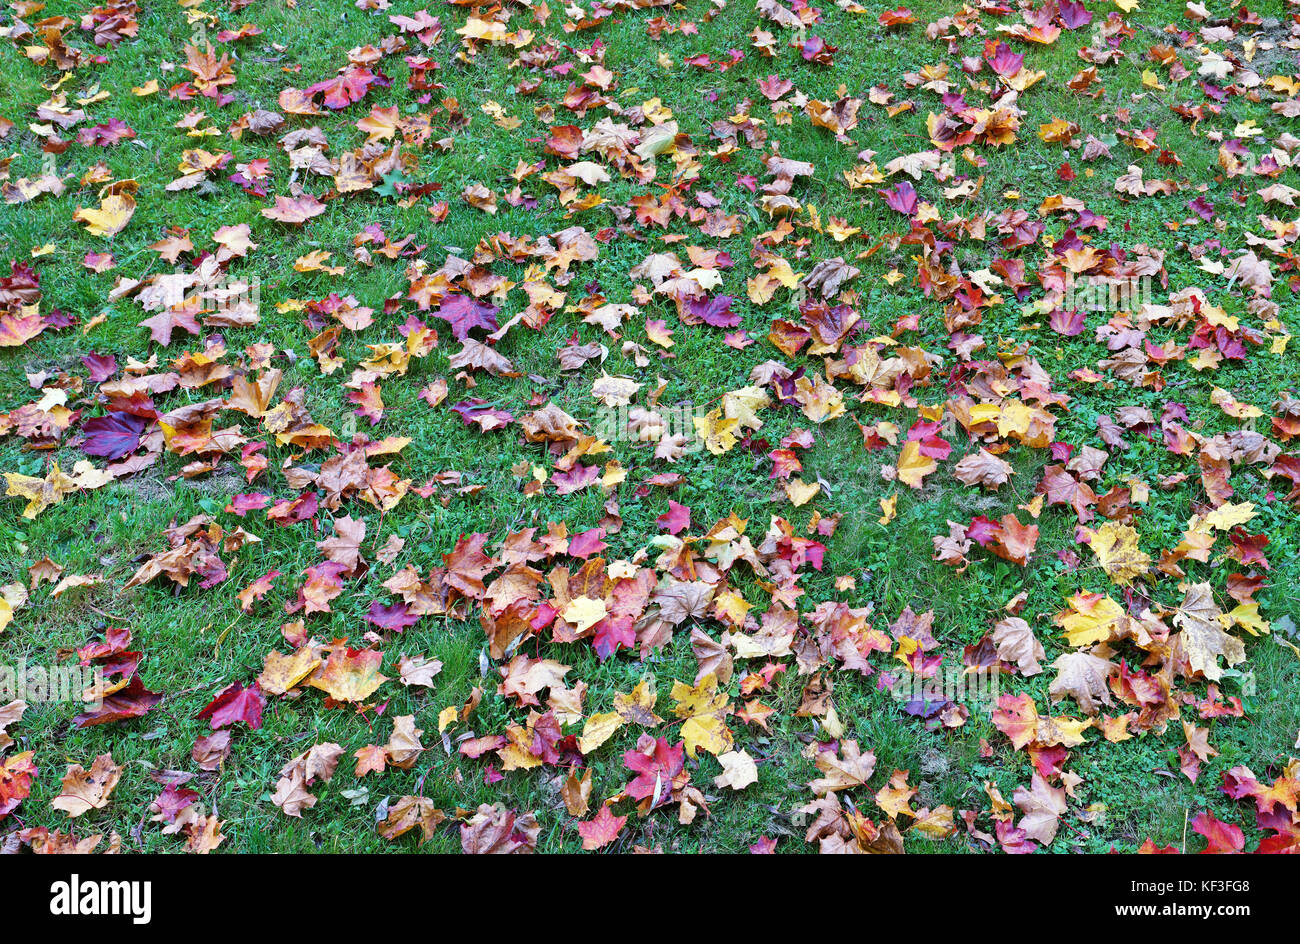 Tausend Herbst Ahorn gelbe und rote Blätter auf dem grünen Rasen liegen. Panoramablick auf die Collage aus mehreren outdoor Fotos Stockfoto